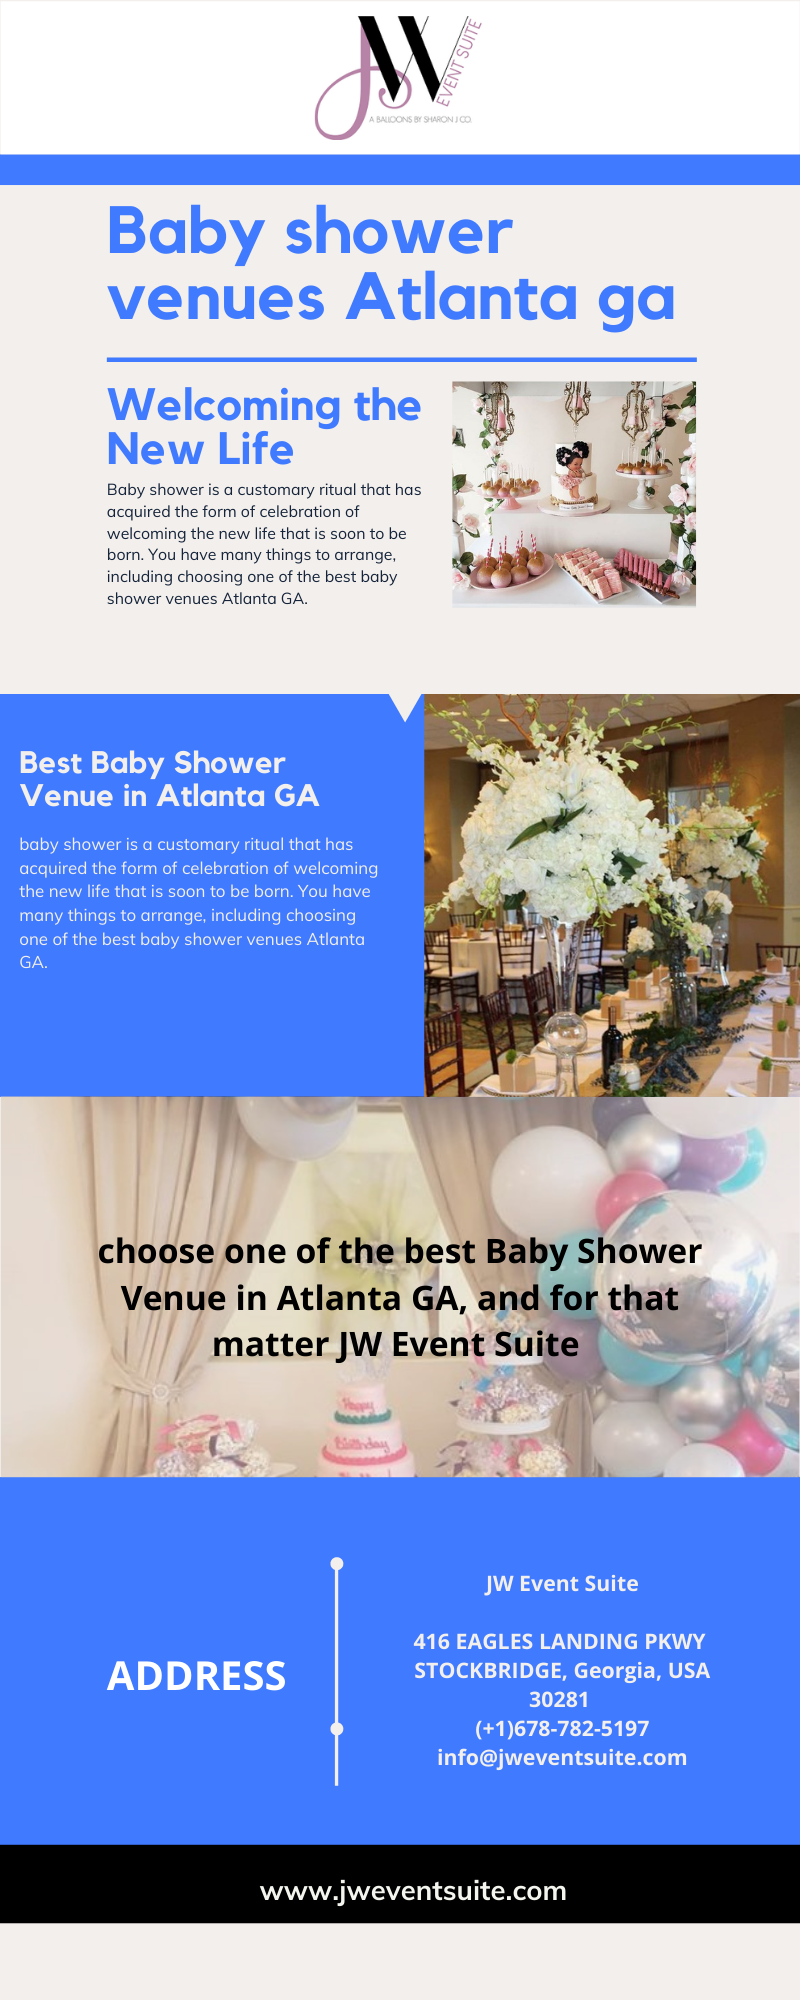 Baby shower venues Atlanta GA.png  by Jweventsuite